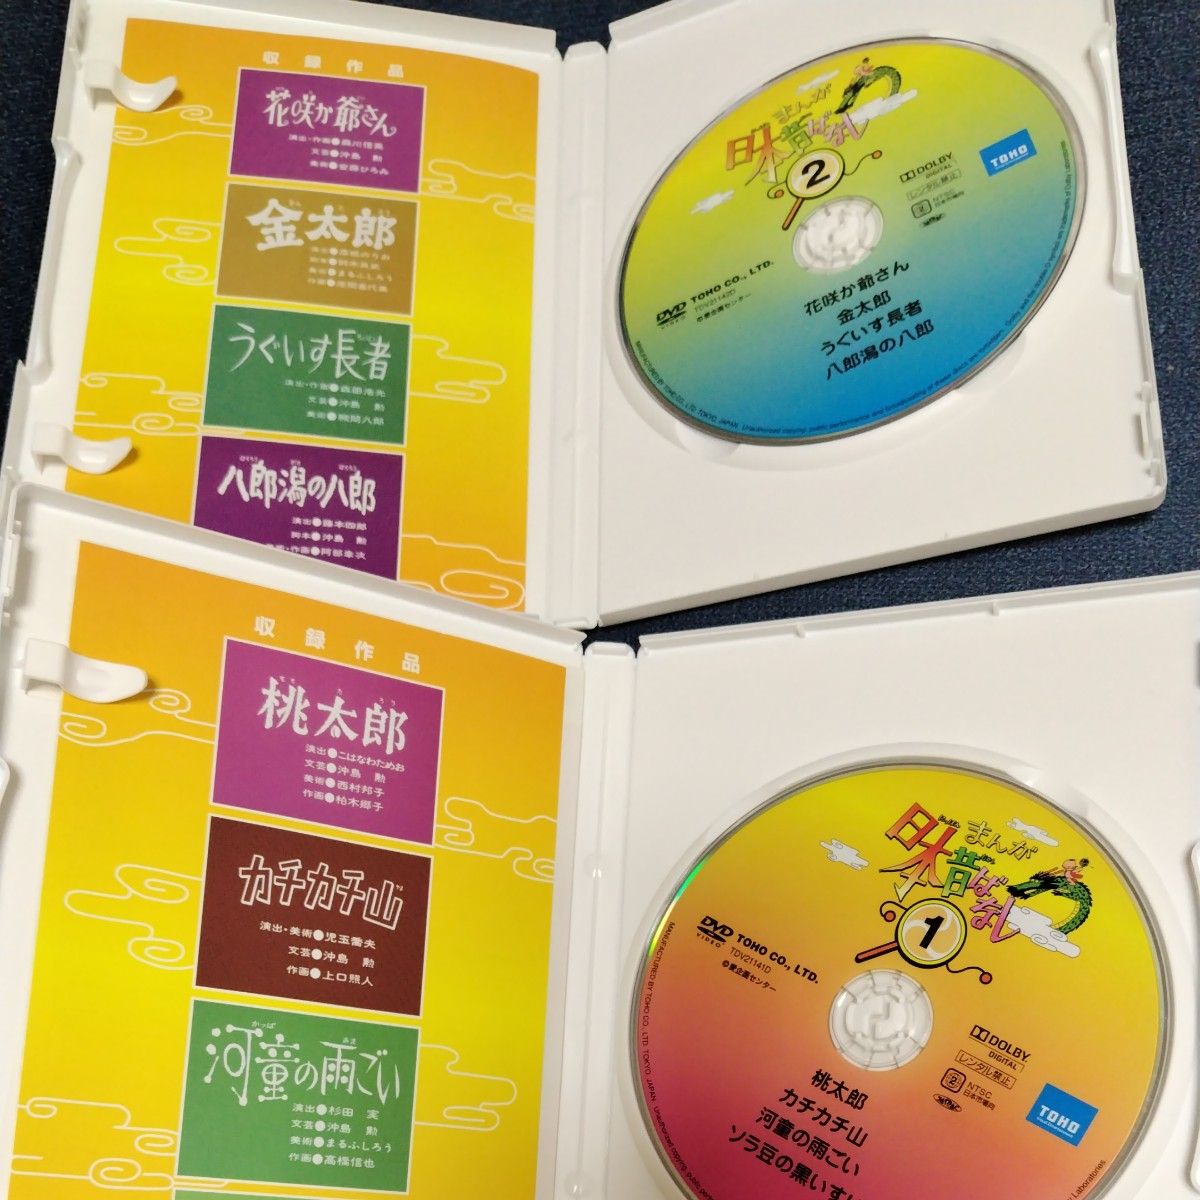 まんが日本昔ばなし DVD-BOX 第1集 (5枚組)